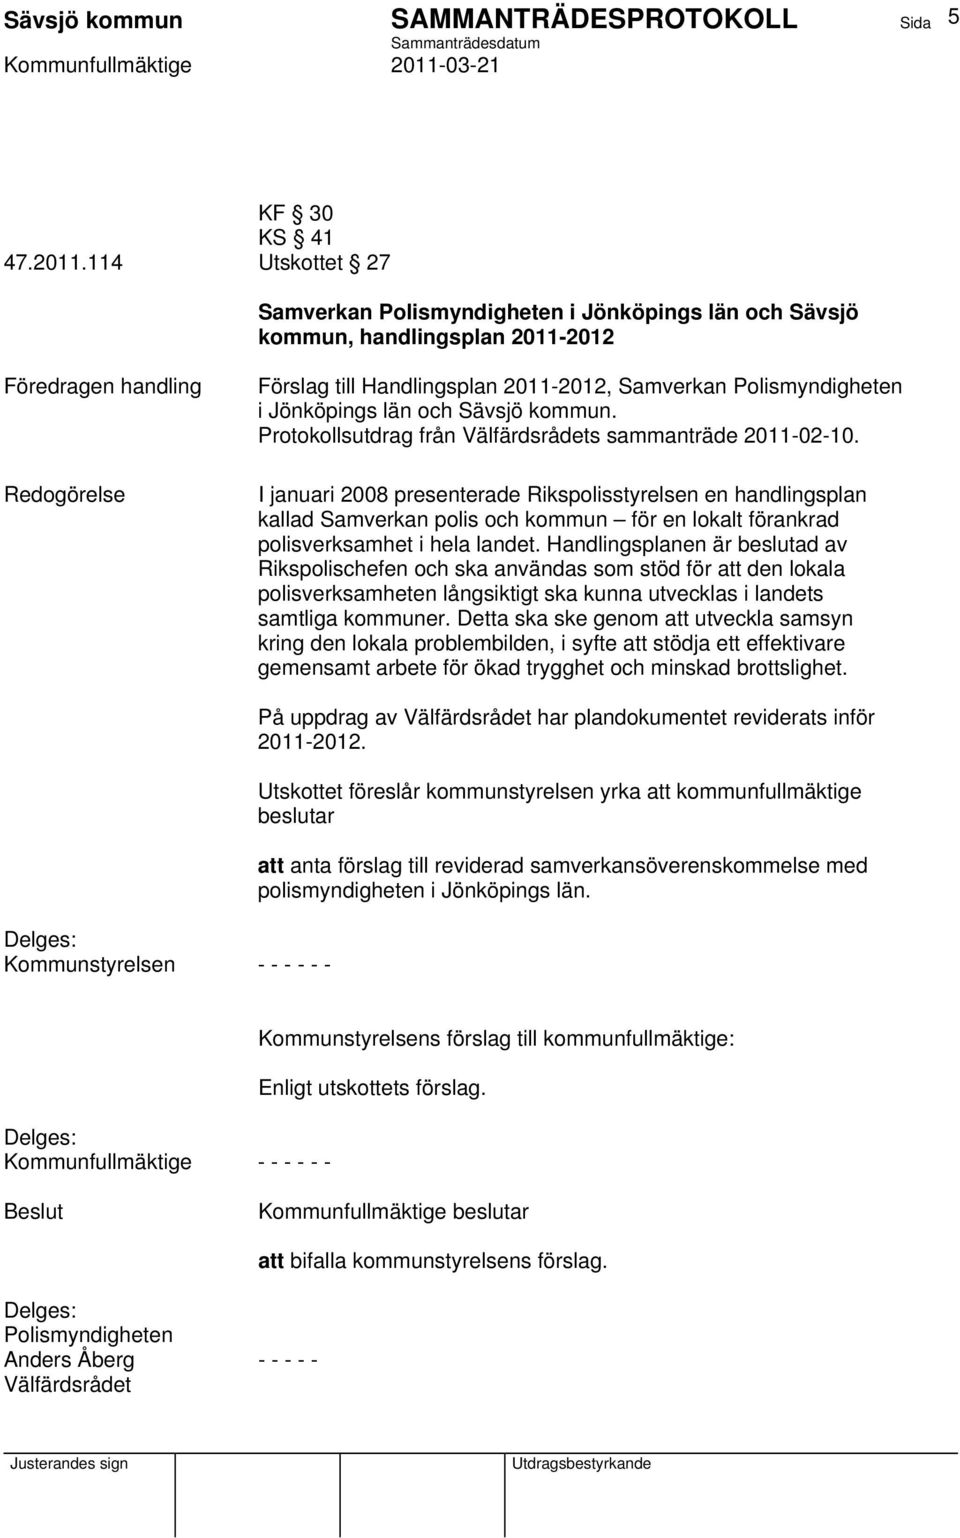 kommun. Protokollsutdrag från Välfärdsrådets sammanträde 2011-02-10.